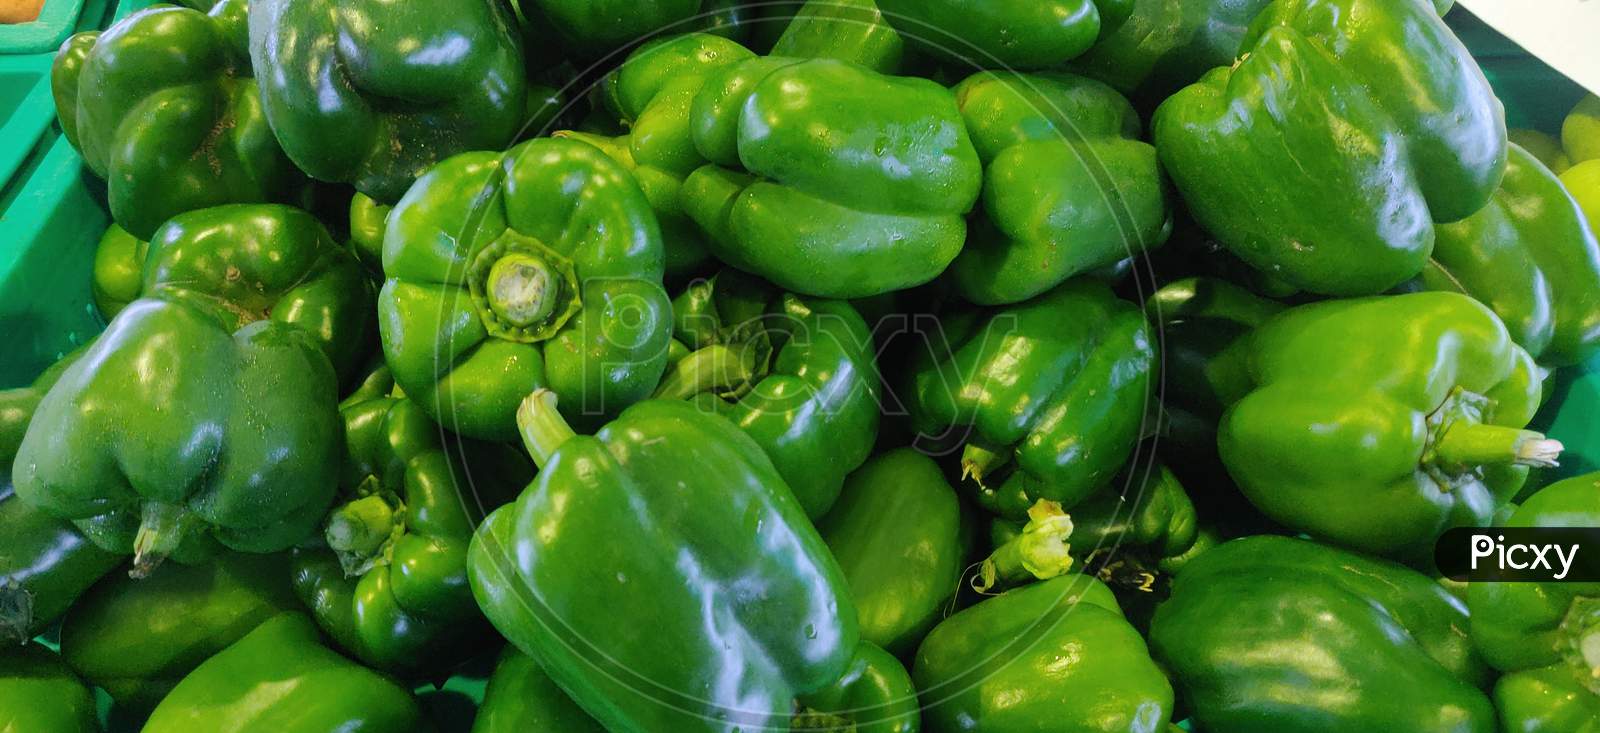 Pile of fresh green capsicum